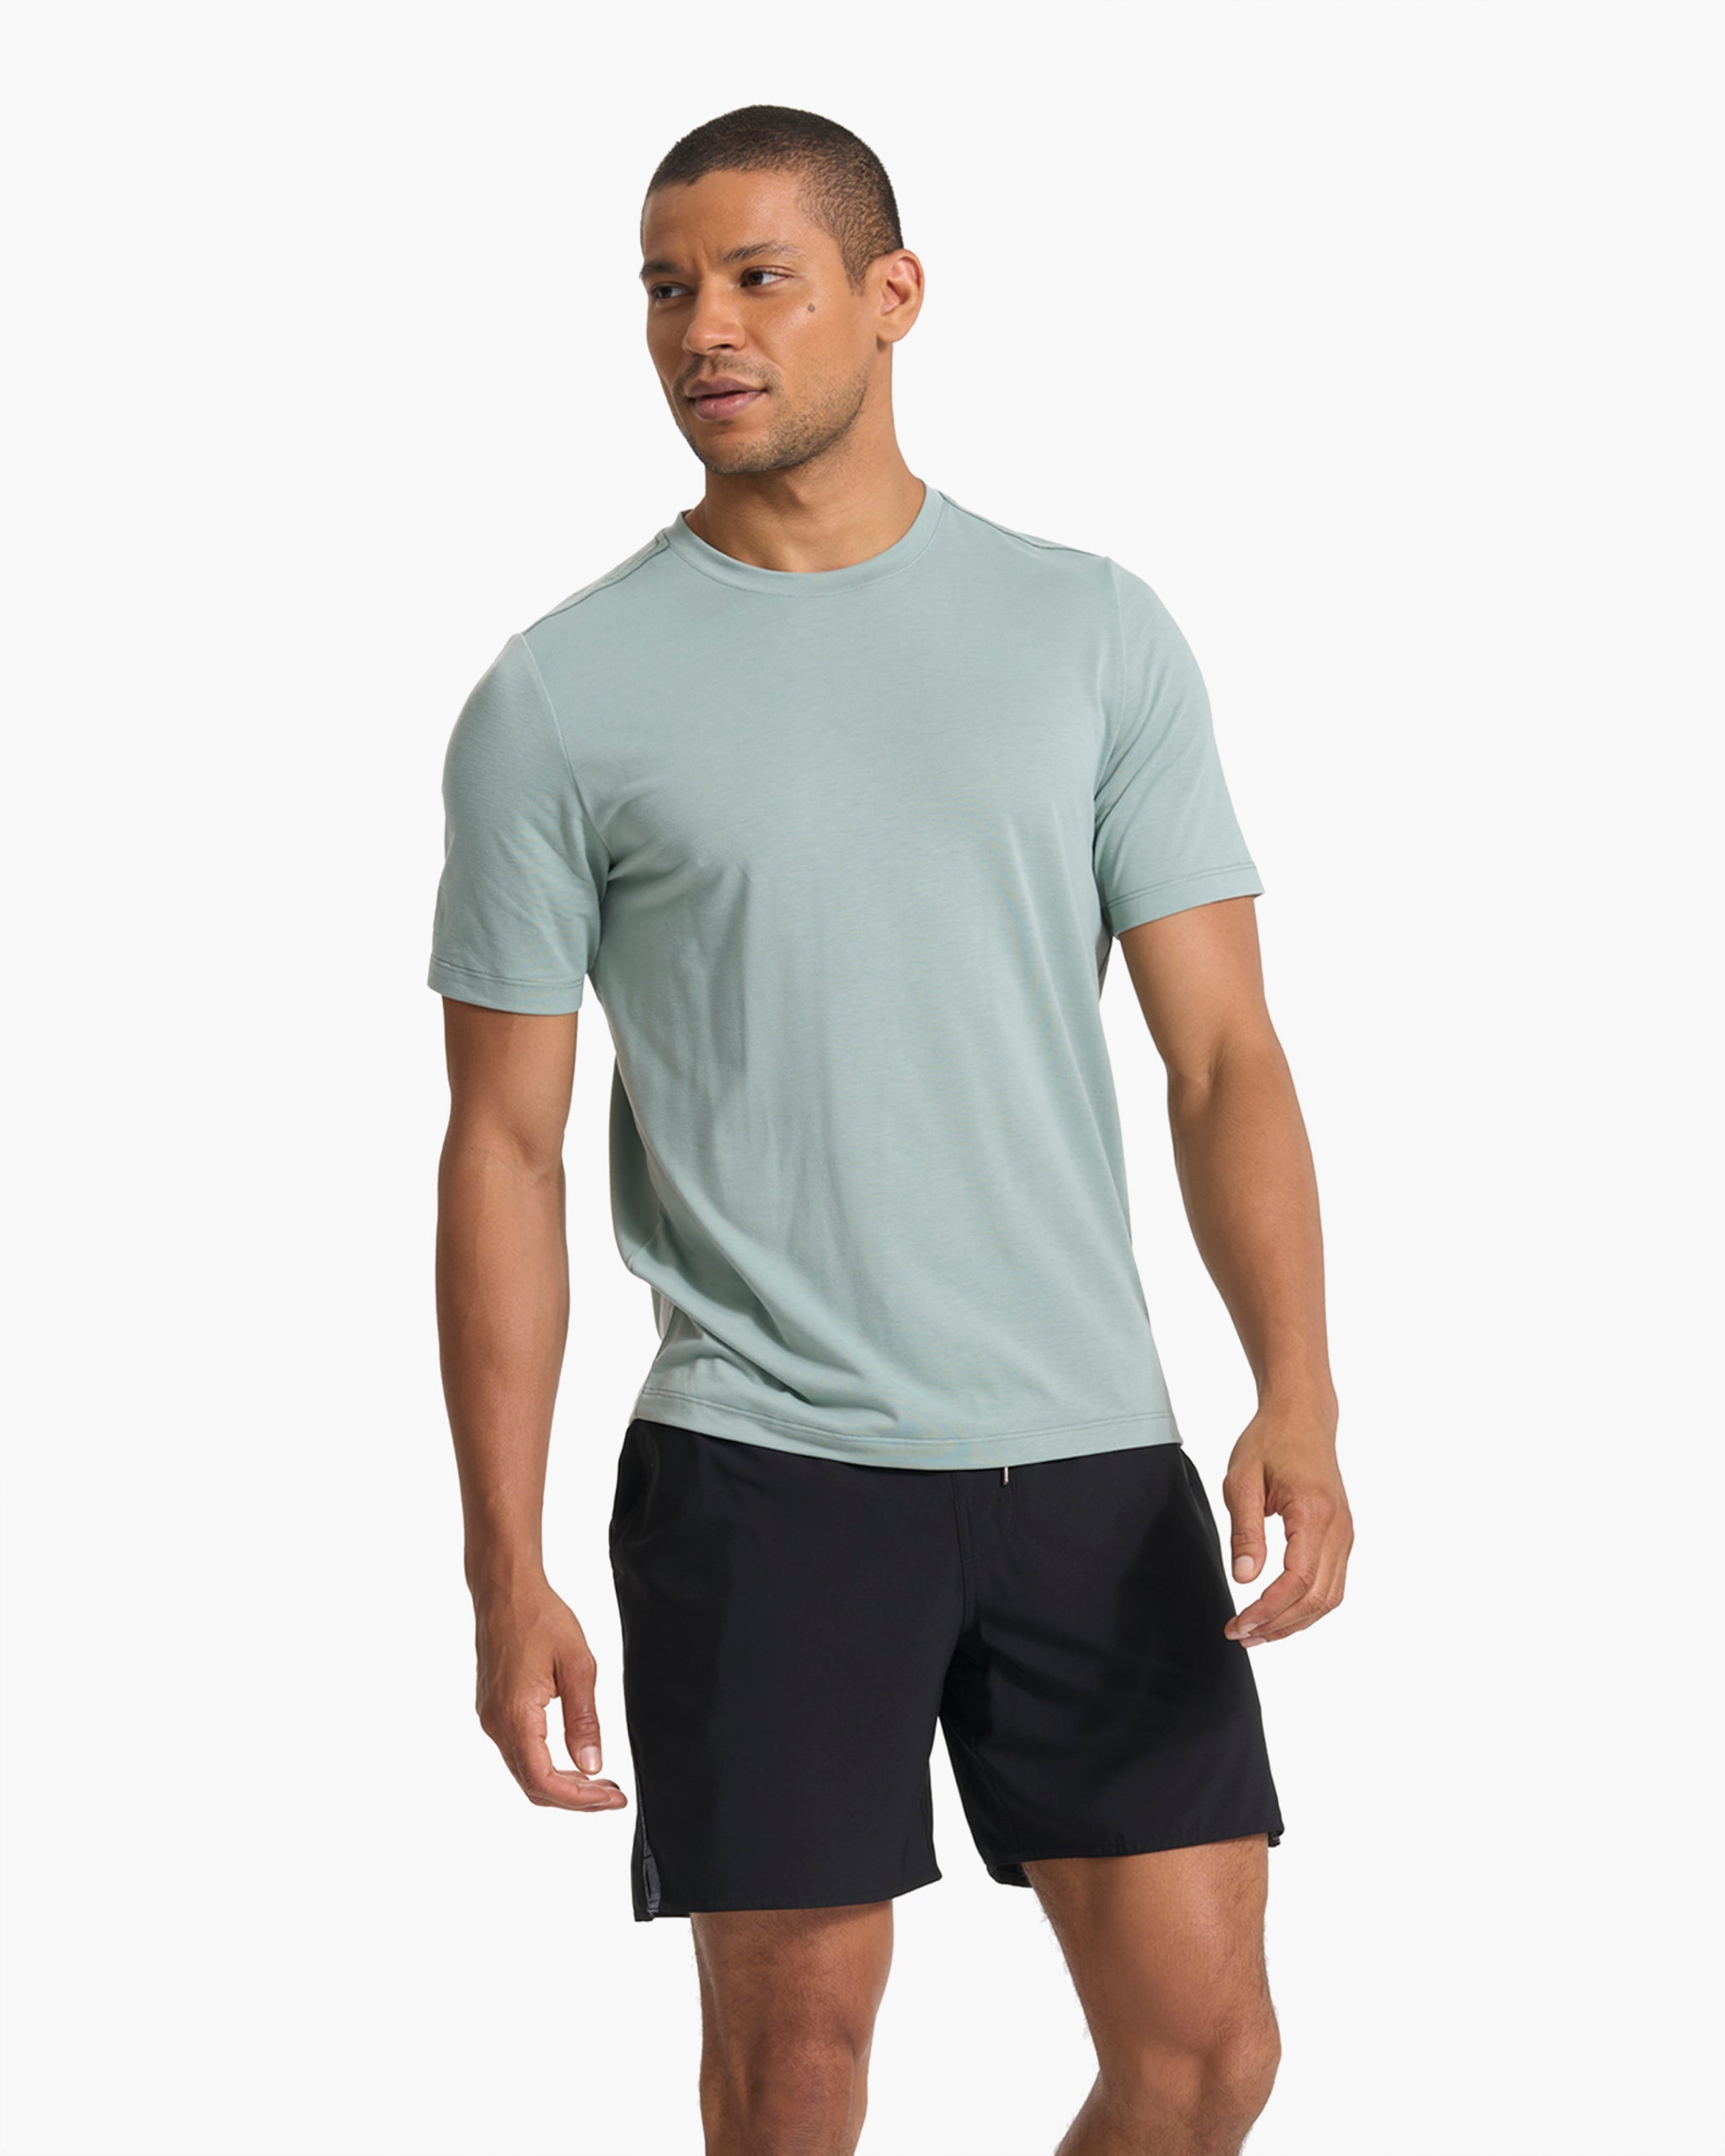 ALO yoga mens blue/gray workout short sleeve shirt size large